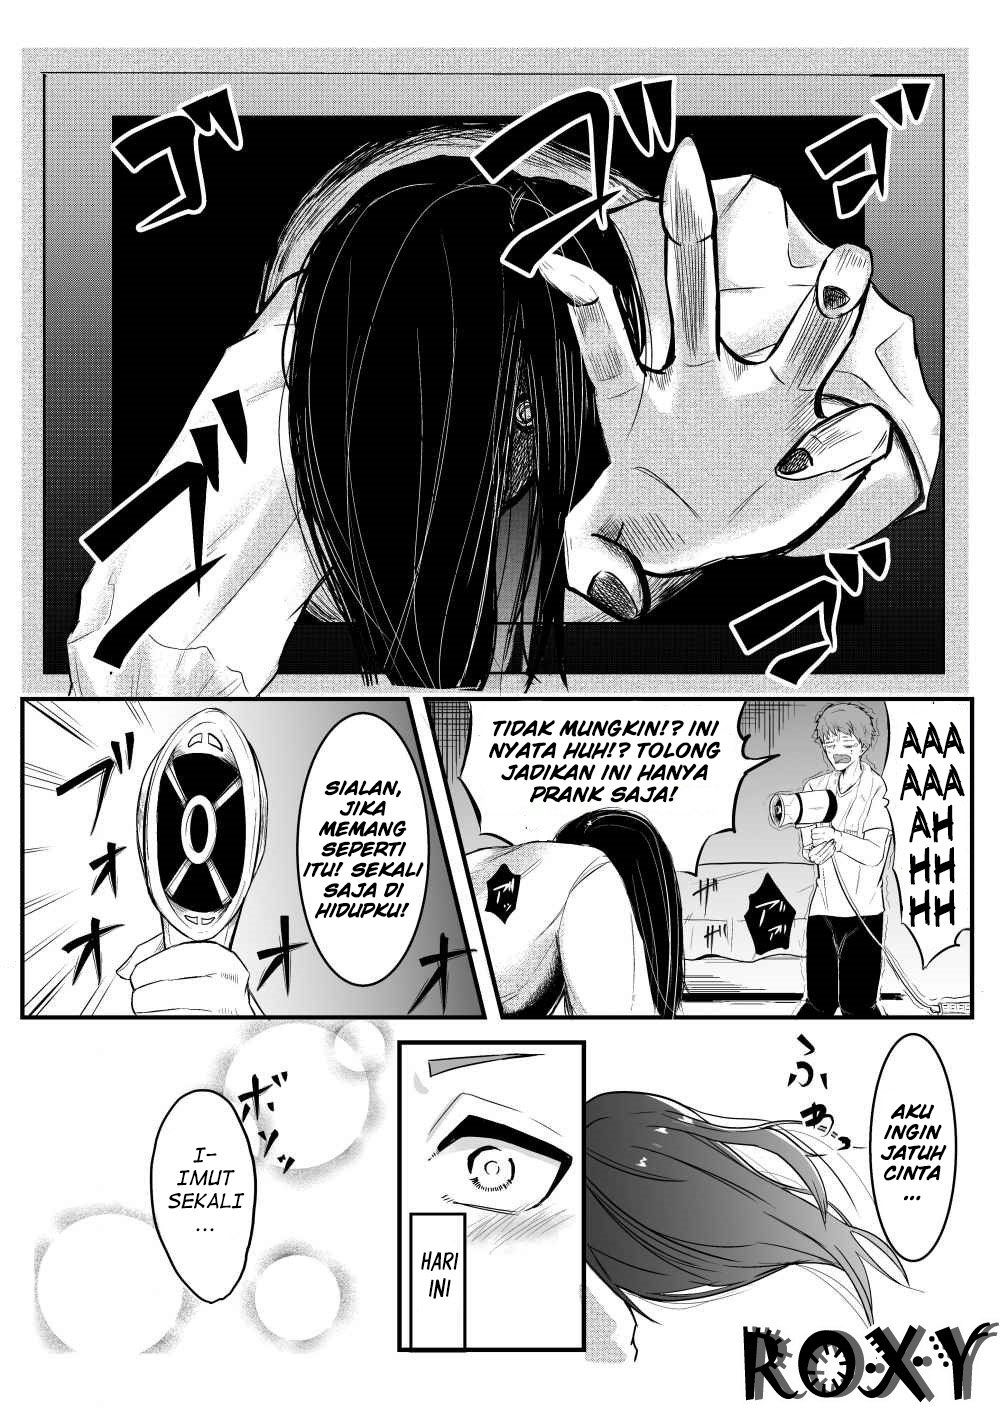 Baca Sadako to Deatte Shimau Hanashi Chapter 1  - GudangKomik